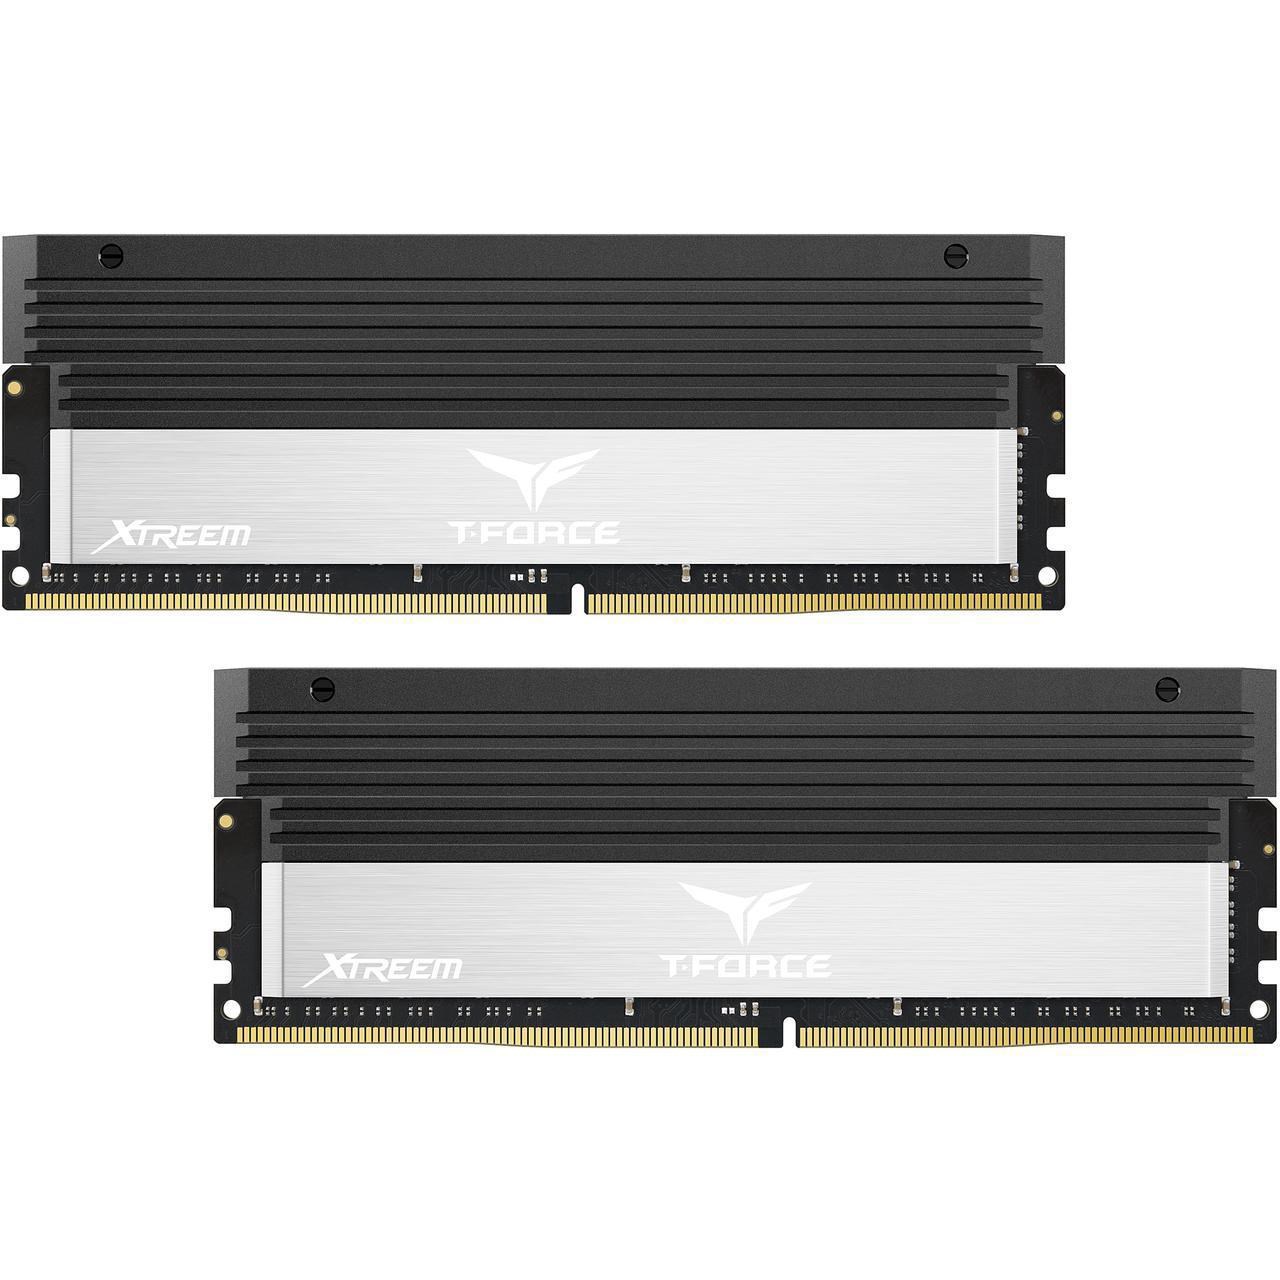 رم دسکتاپ DDR4 دو کاناله 3600 مگاهرتز CL18 تیم گروپ مدل T-Force XTREEM ظرفیت 16 گیگابایت